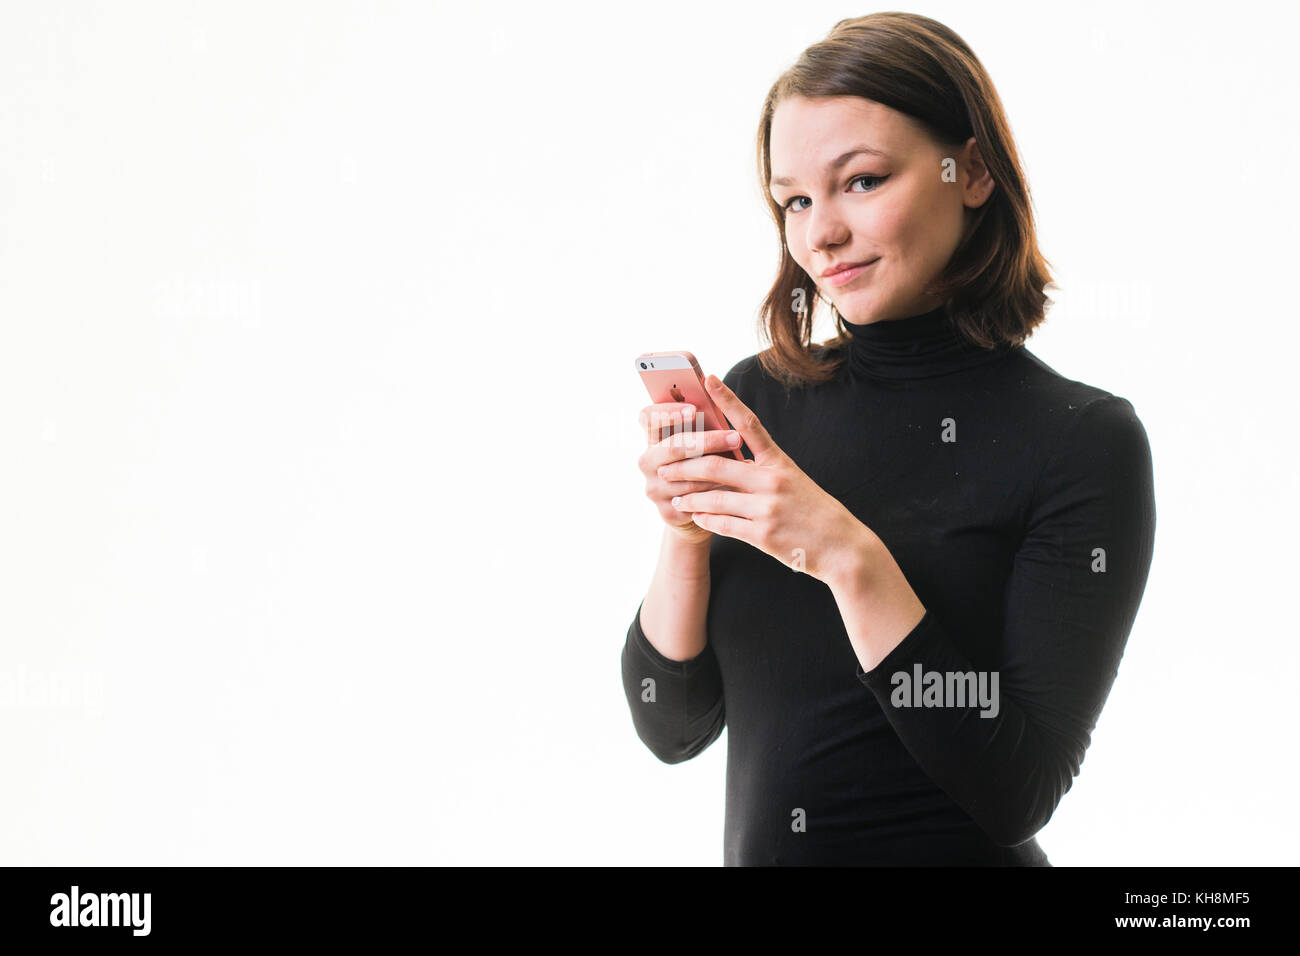 Eine junge Braunhaarige kaukasischen Jugendmädchen Messaging sms auf ihrem Handy, Smartphone, Handy, Stockfoto